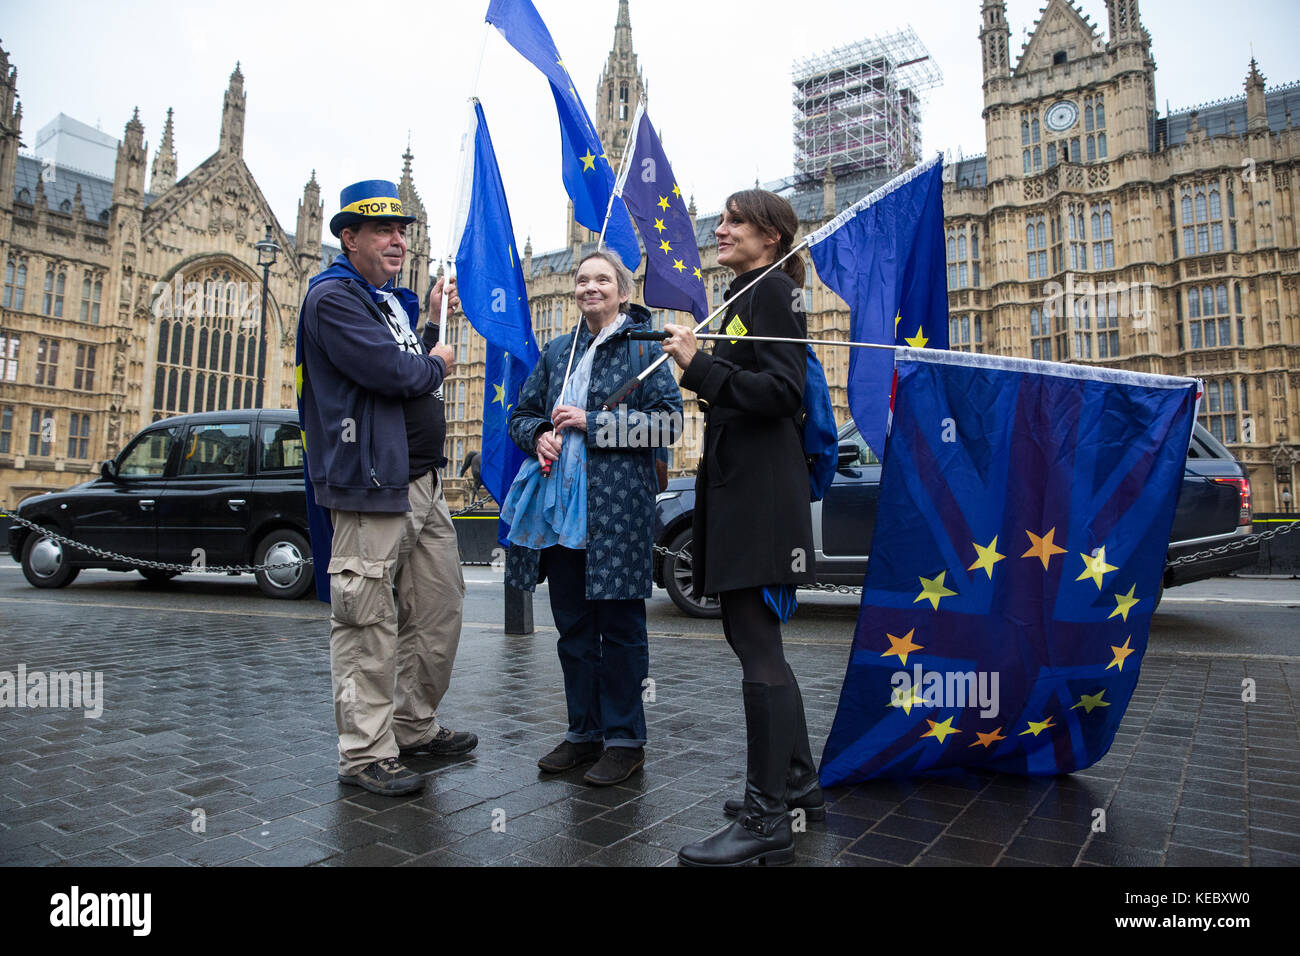 London, Großbritannien. 19 Okt, 2017. Anti-brexit Demonstranten mit EU-Flaggen gegenüber dem Palast von Westminster stehen. Credit: Mark kerrison/alamy leben Nachrichten Stockfoto